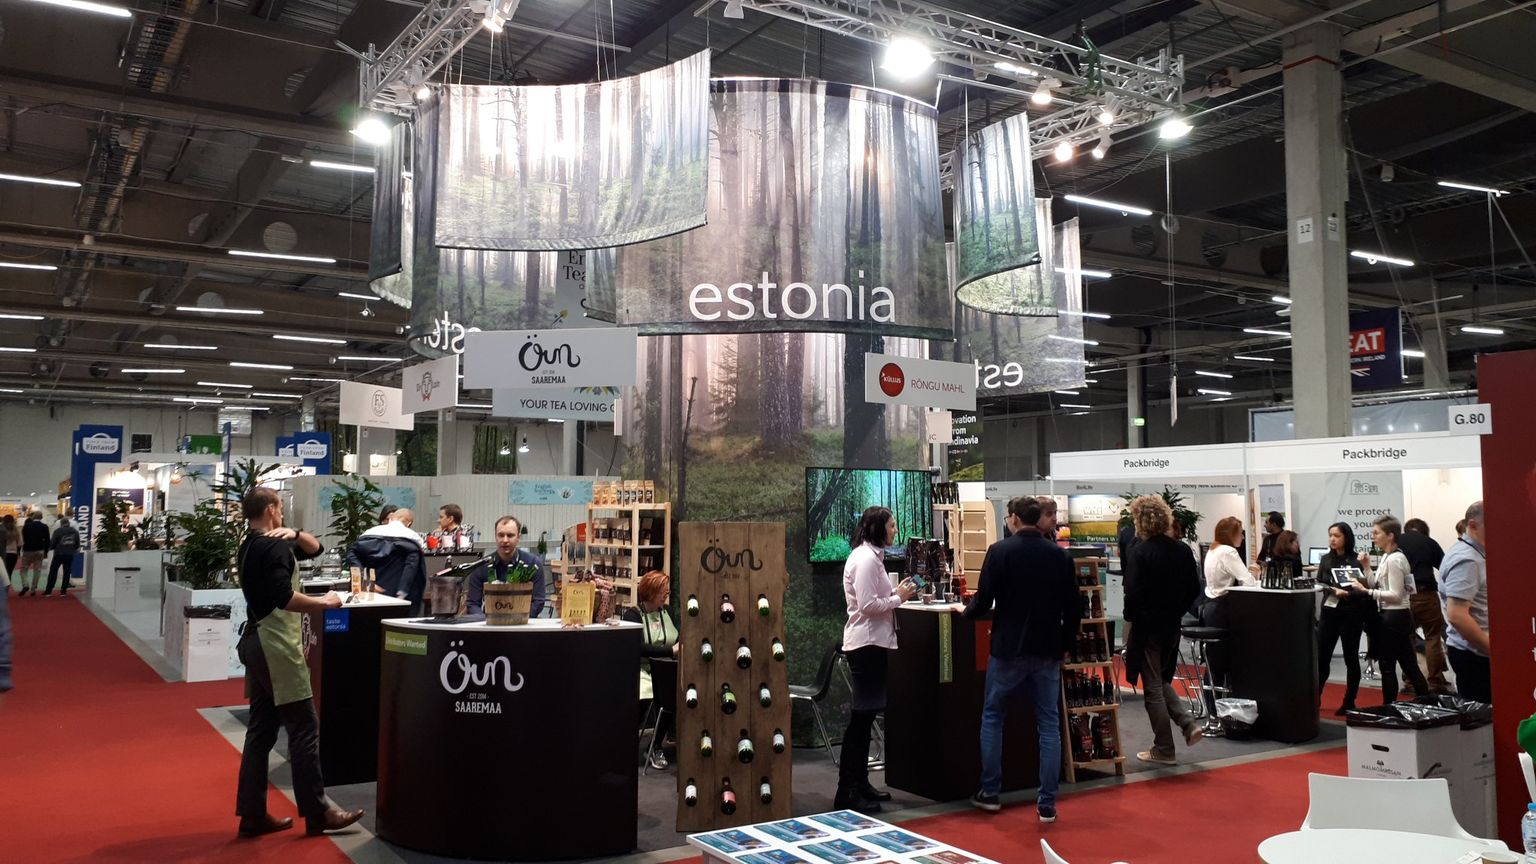 Malmös toimus Skandinaaviamaade suurim mahemess Nordic Organic Food Fair 2019, kus osales kaheksa Eesti ettevõtet.